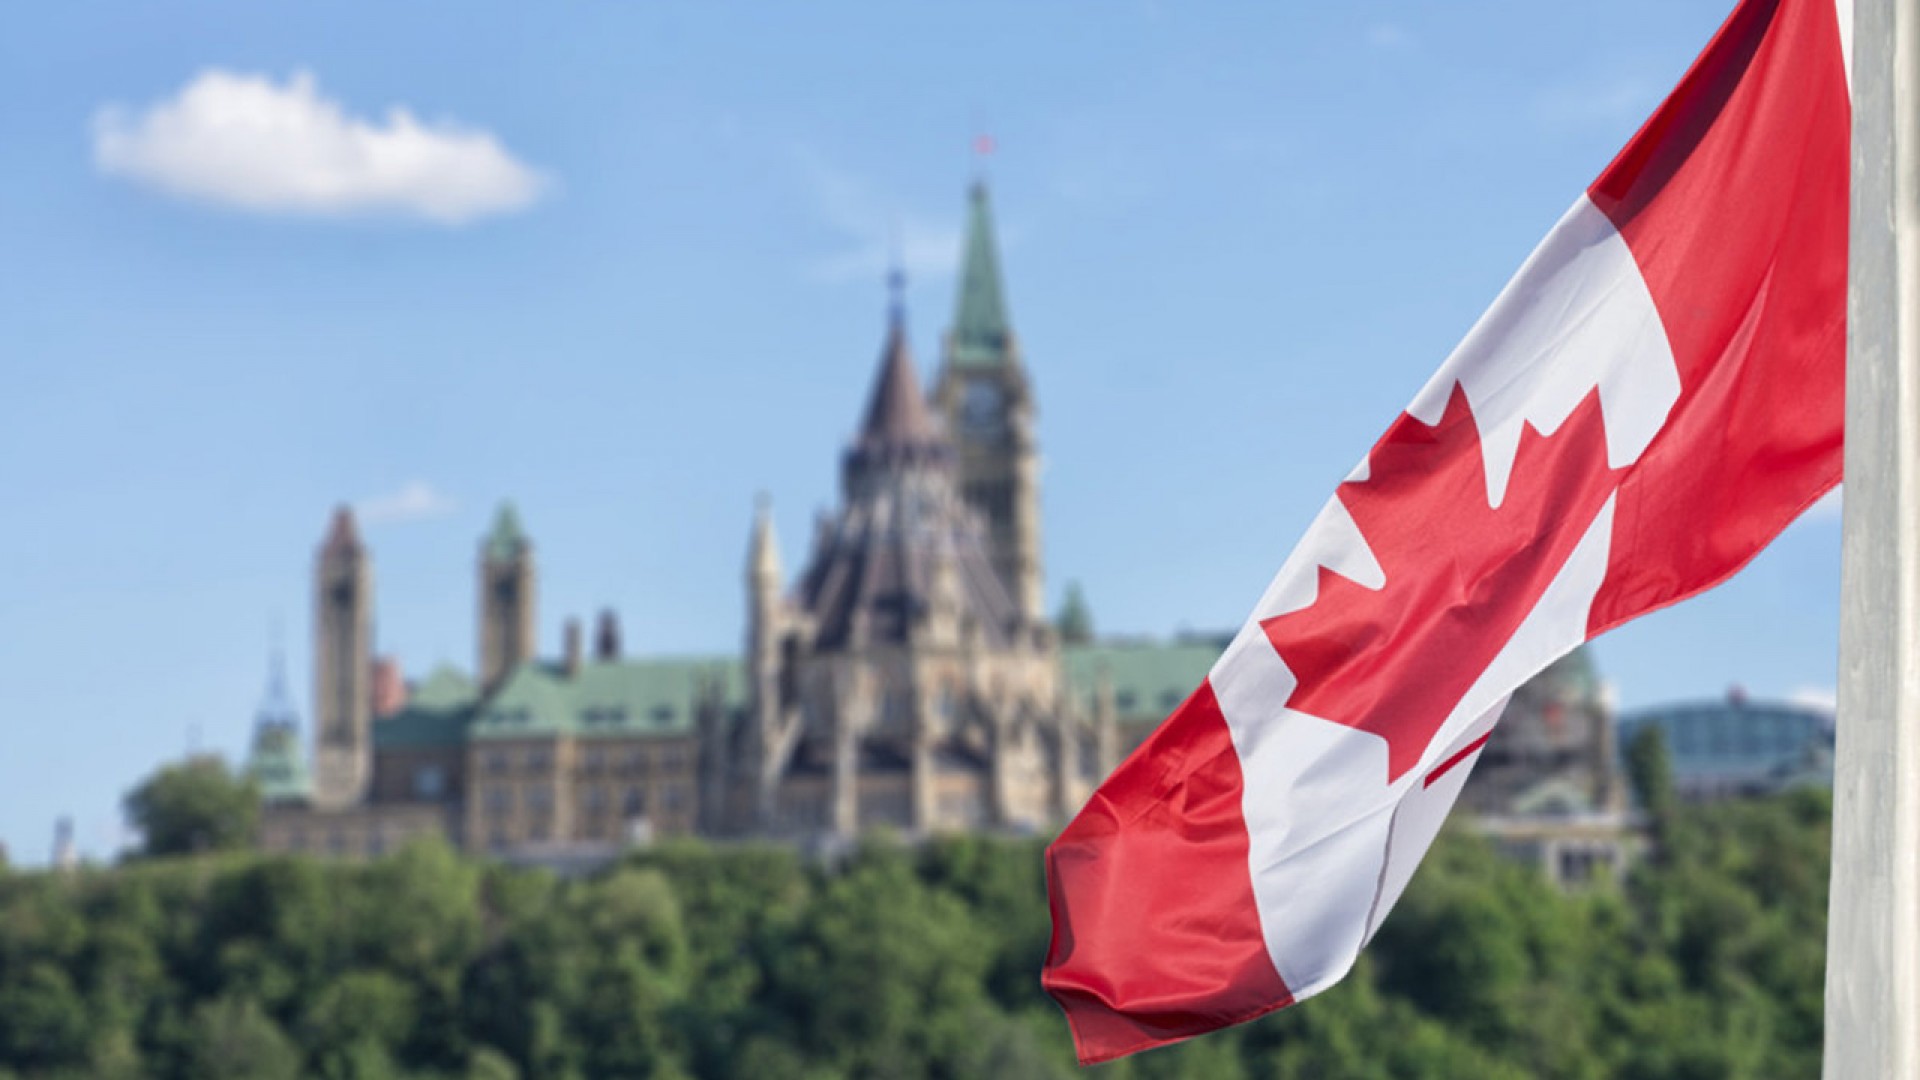 Du học hè Canada năm 2019, bạn đã sẵn sàng? (P1)